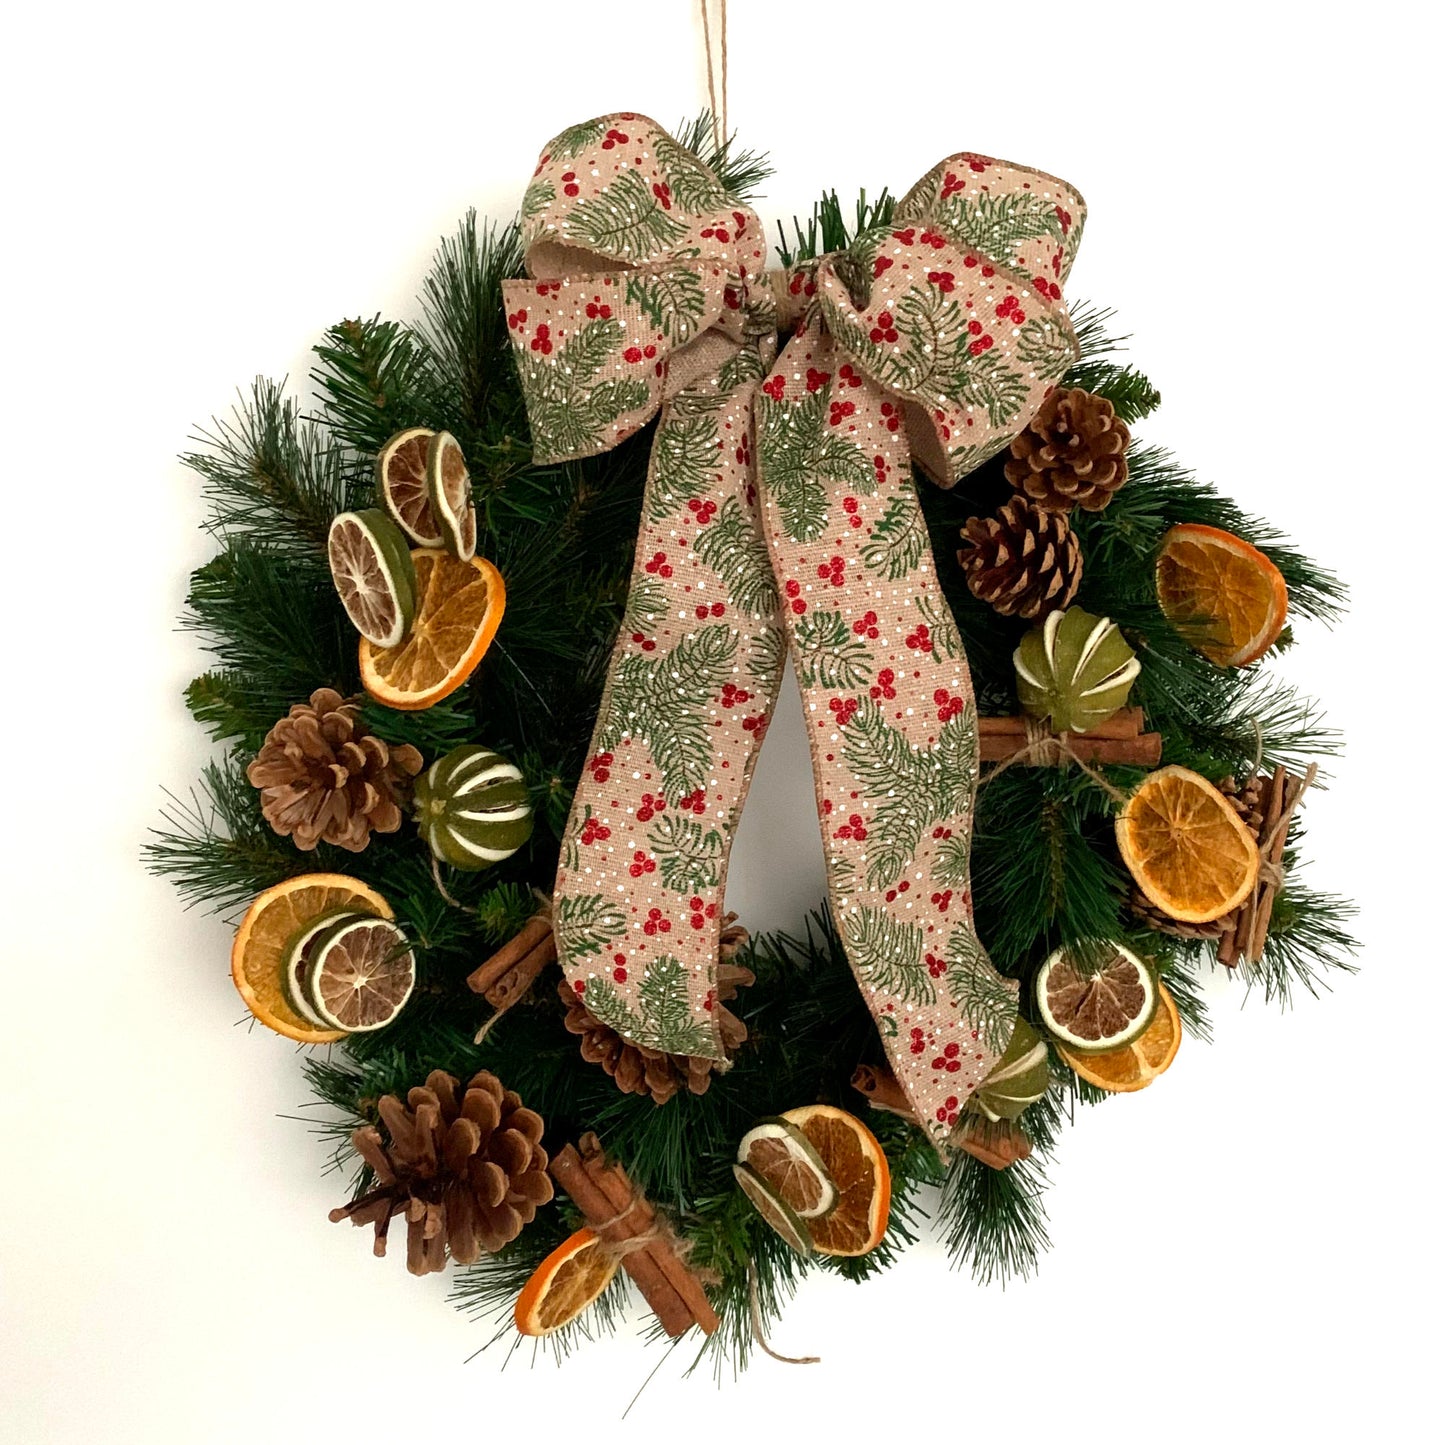 DIY Christmas Wreath Kit - make your own